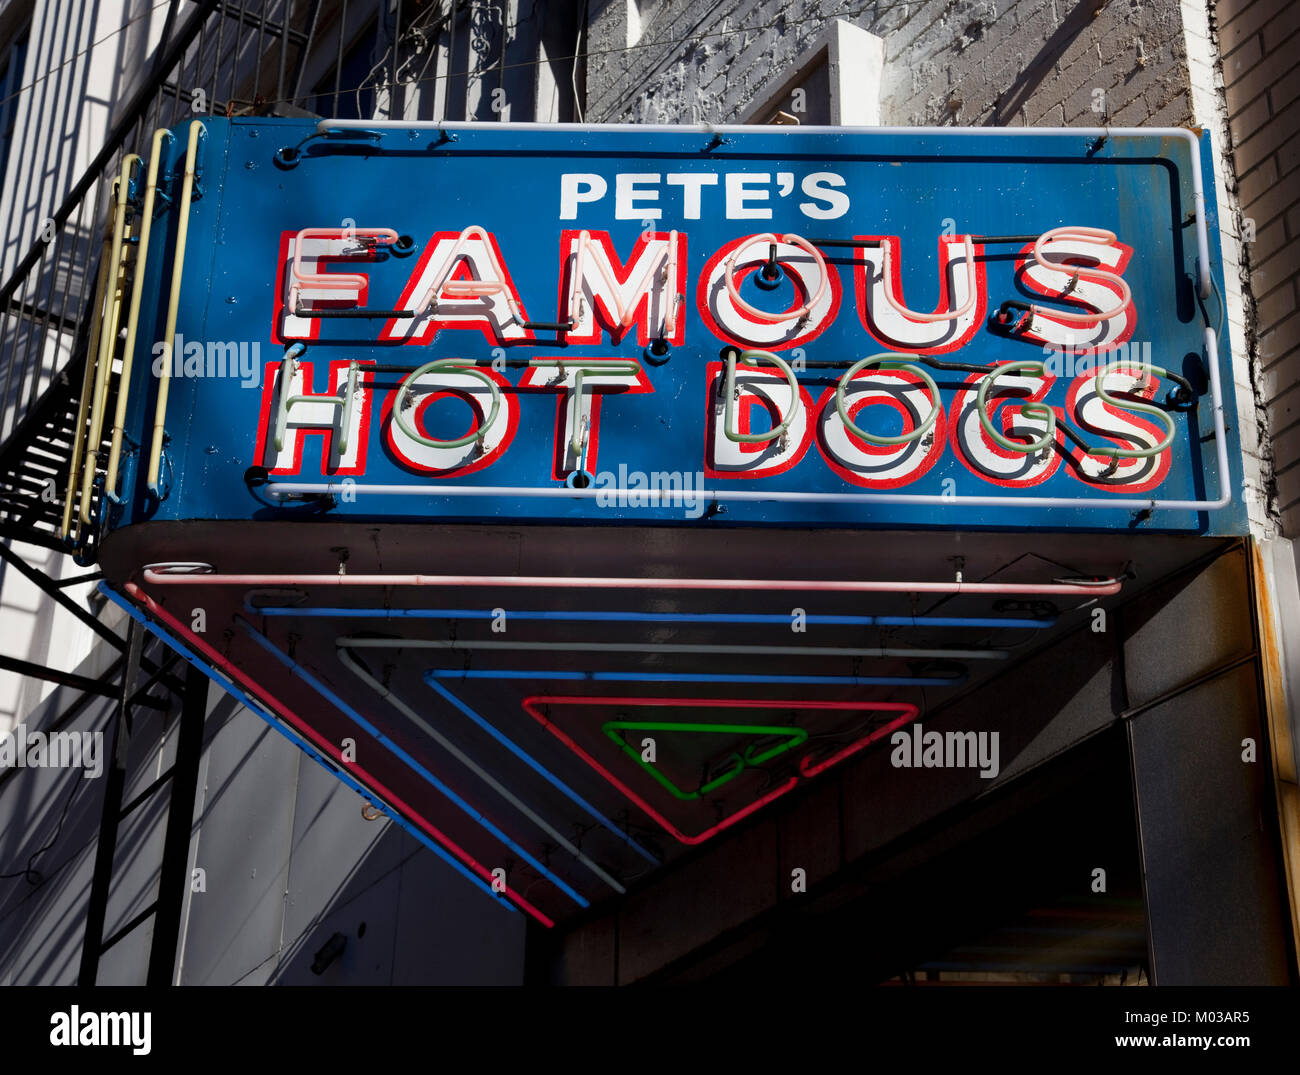 Pete's célèbre Hot Dogs, Birmingham, Alabama Banque D'Images